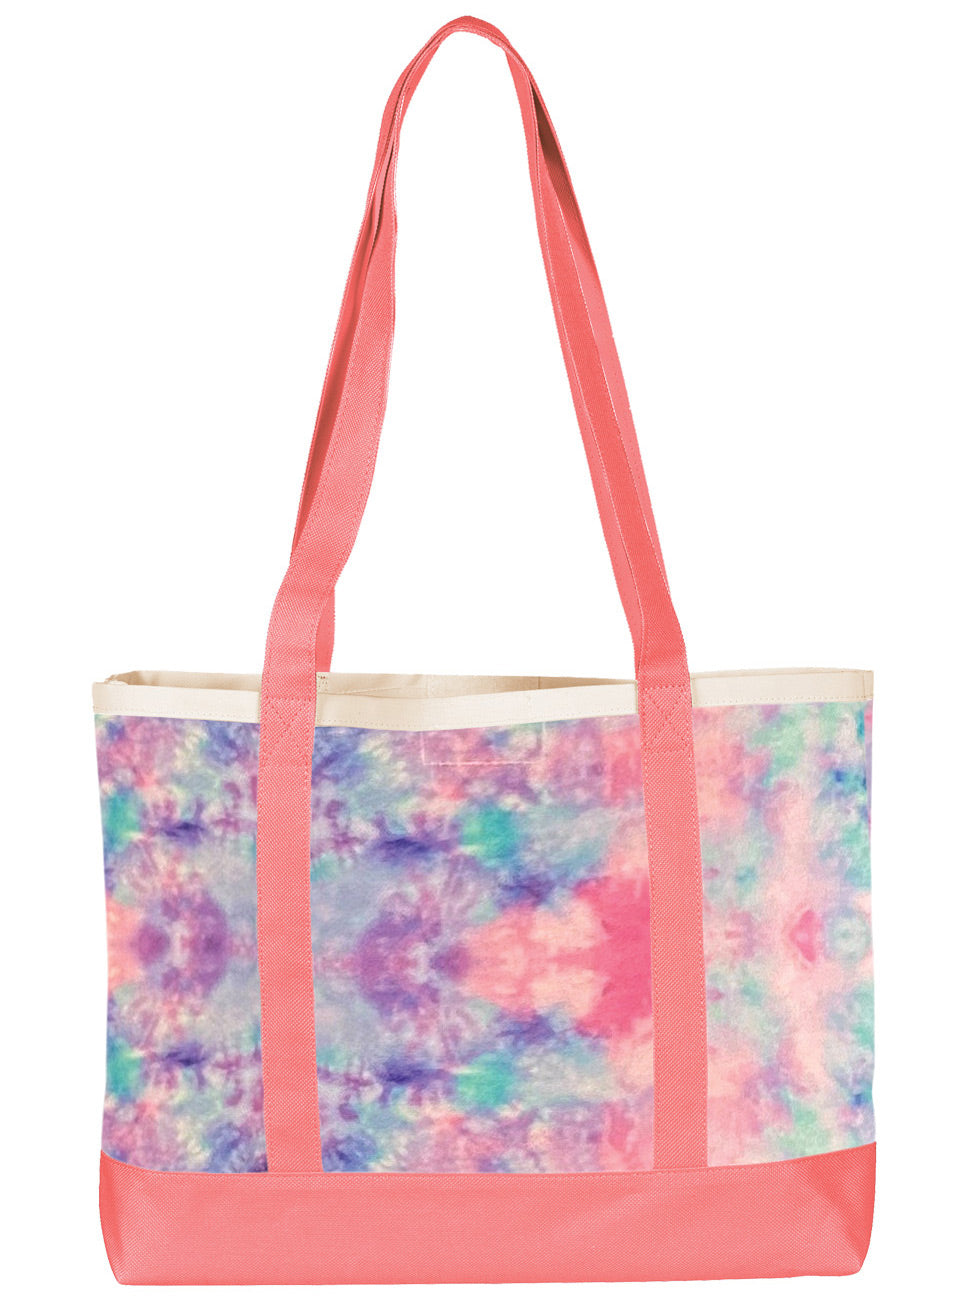 Large Tote Bag by Prestige /  Tie Dye Pastel Pink